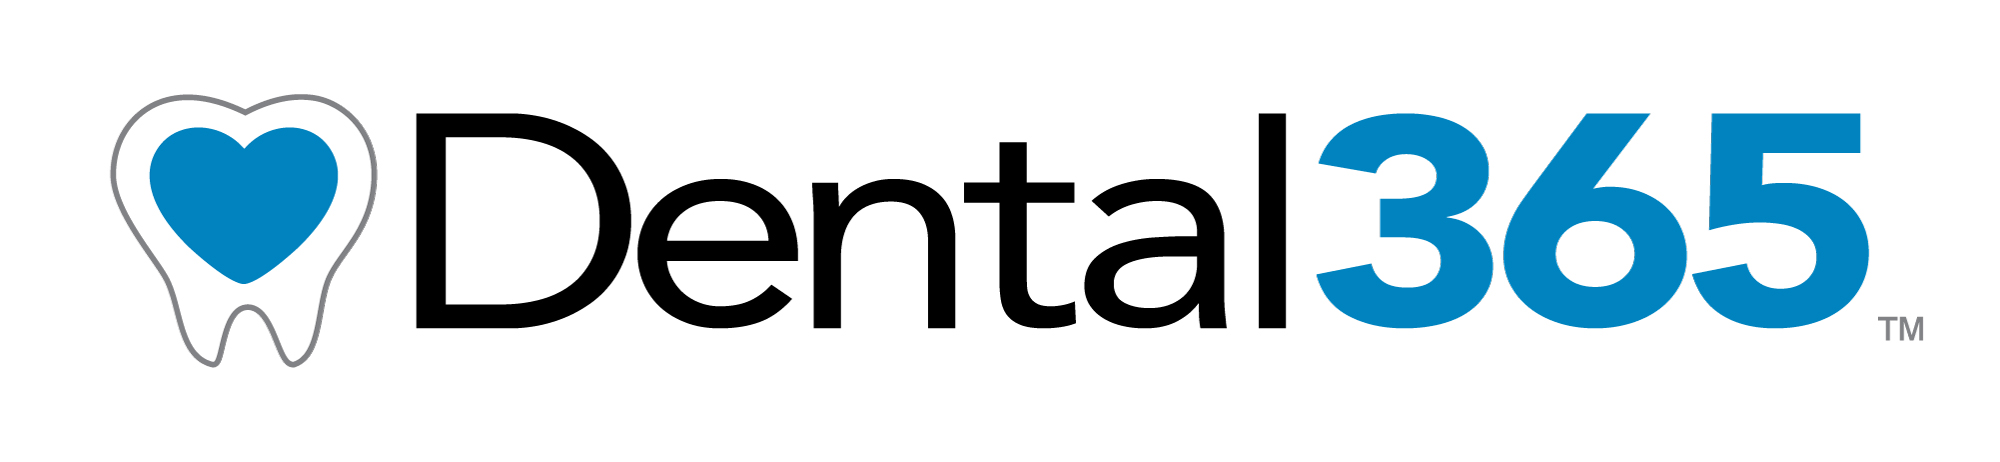 Dental365 Company Logo